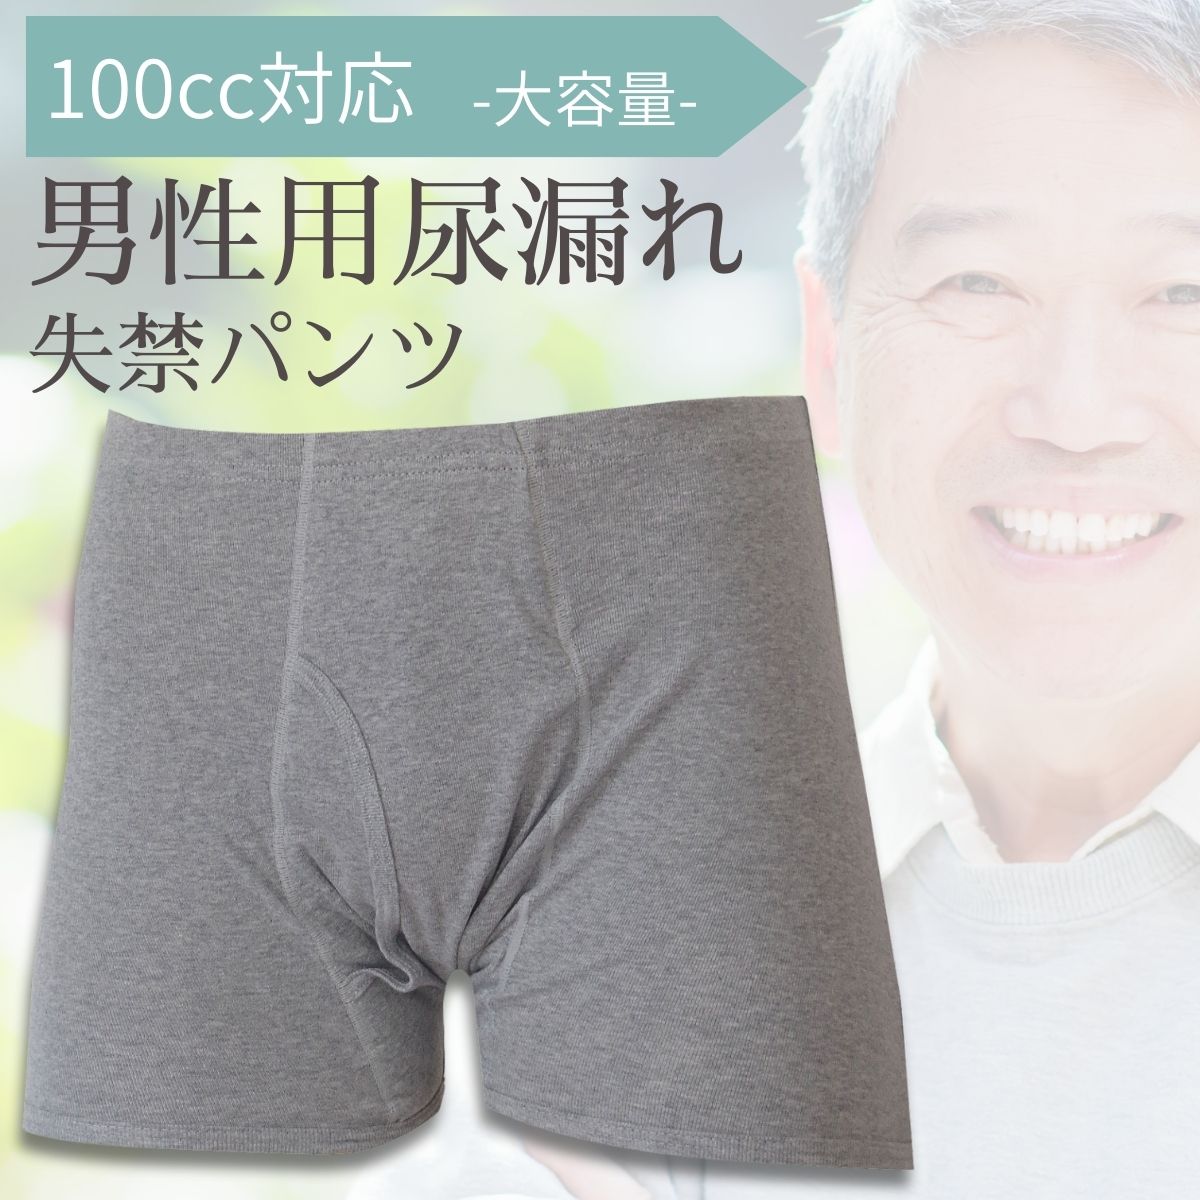 【33015】男性用尿漏れパンツ